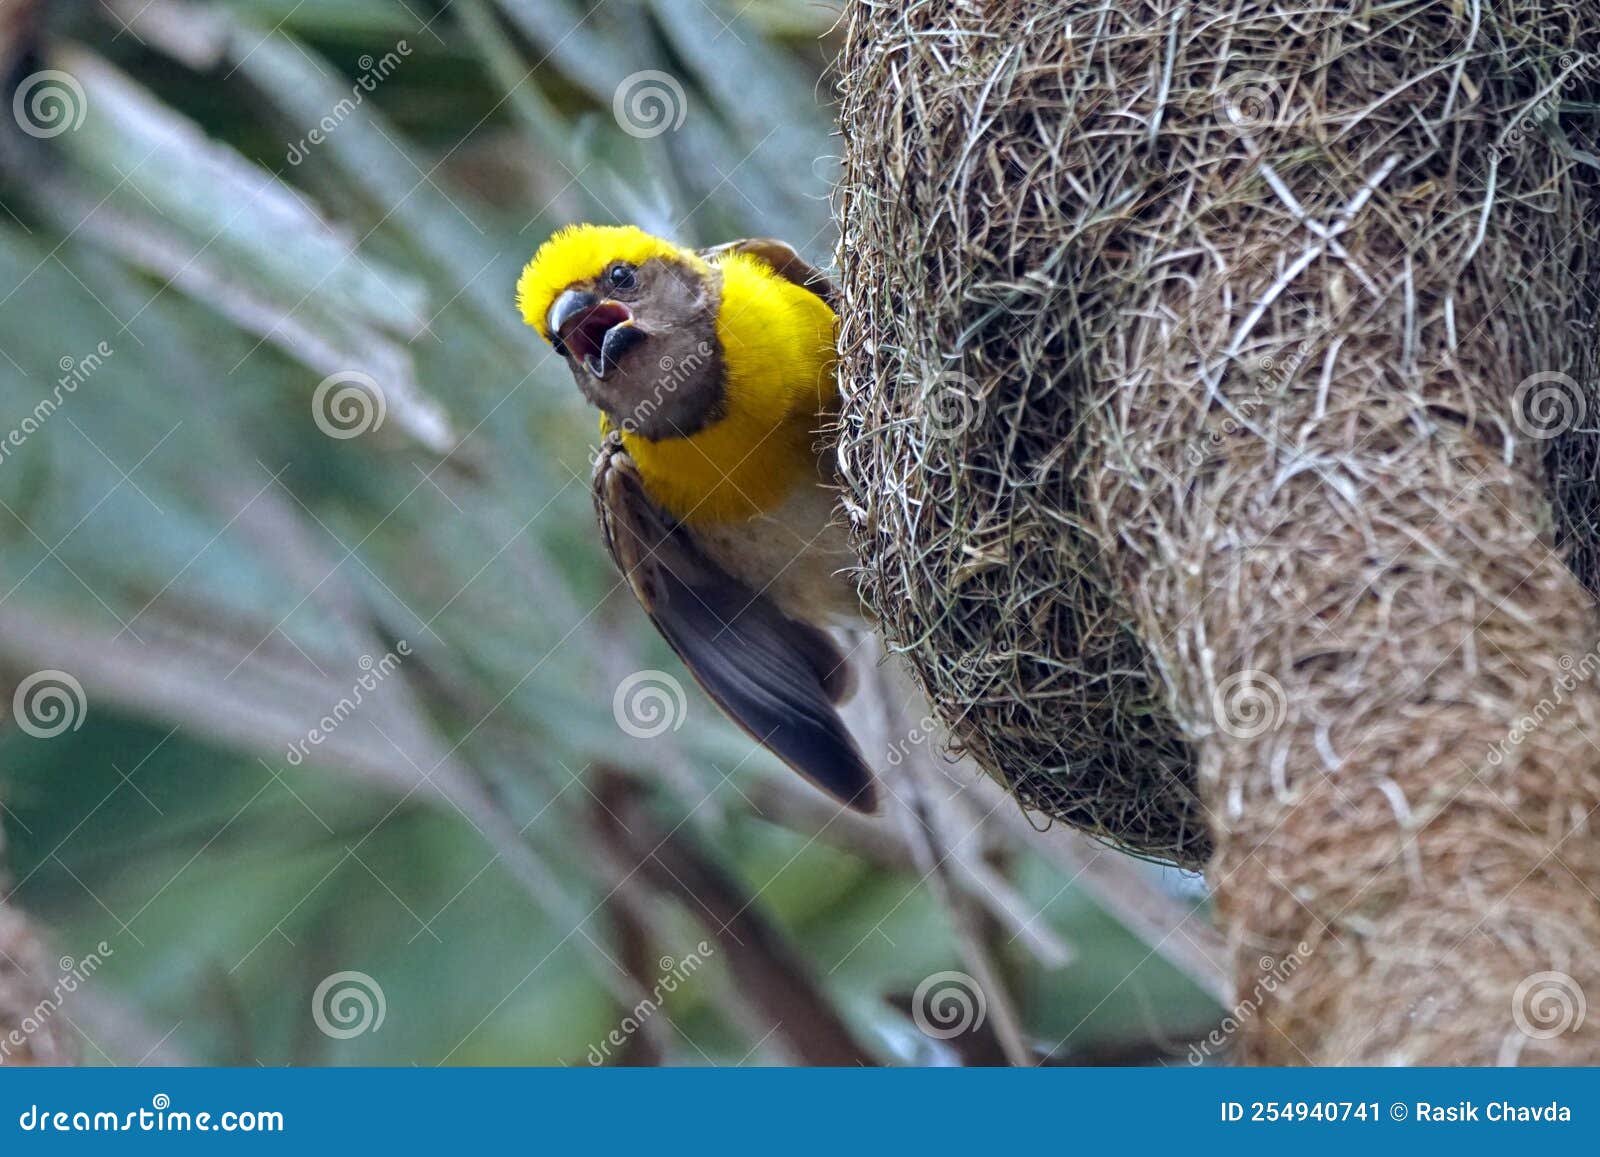 baya viver male in nesting session